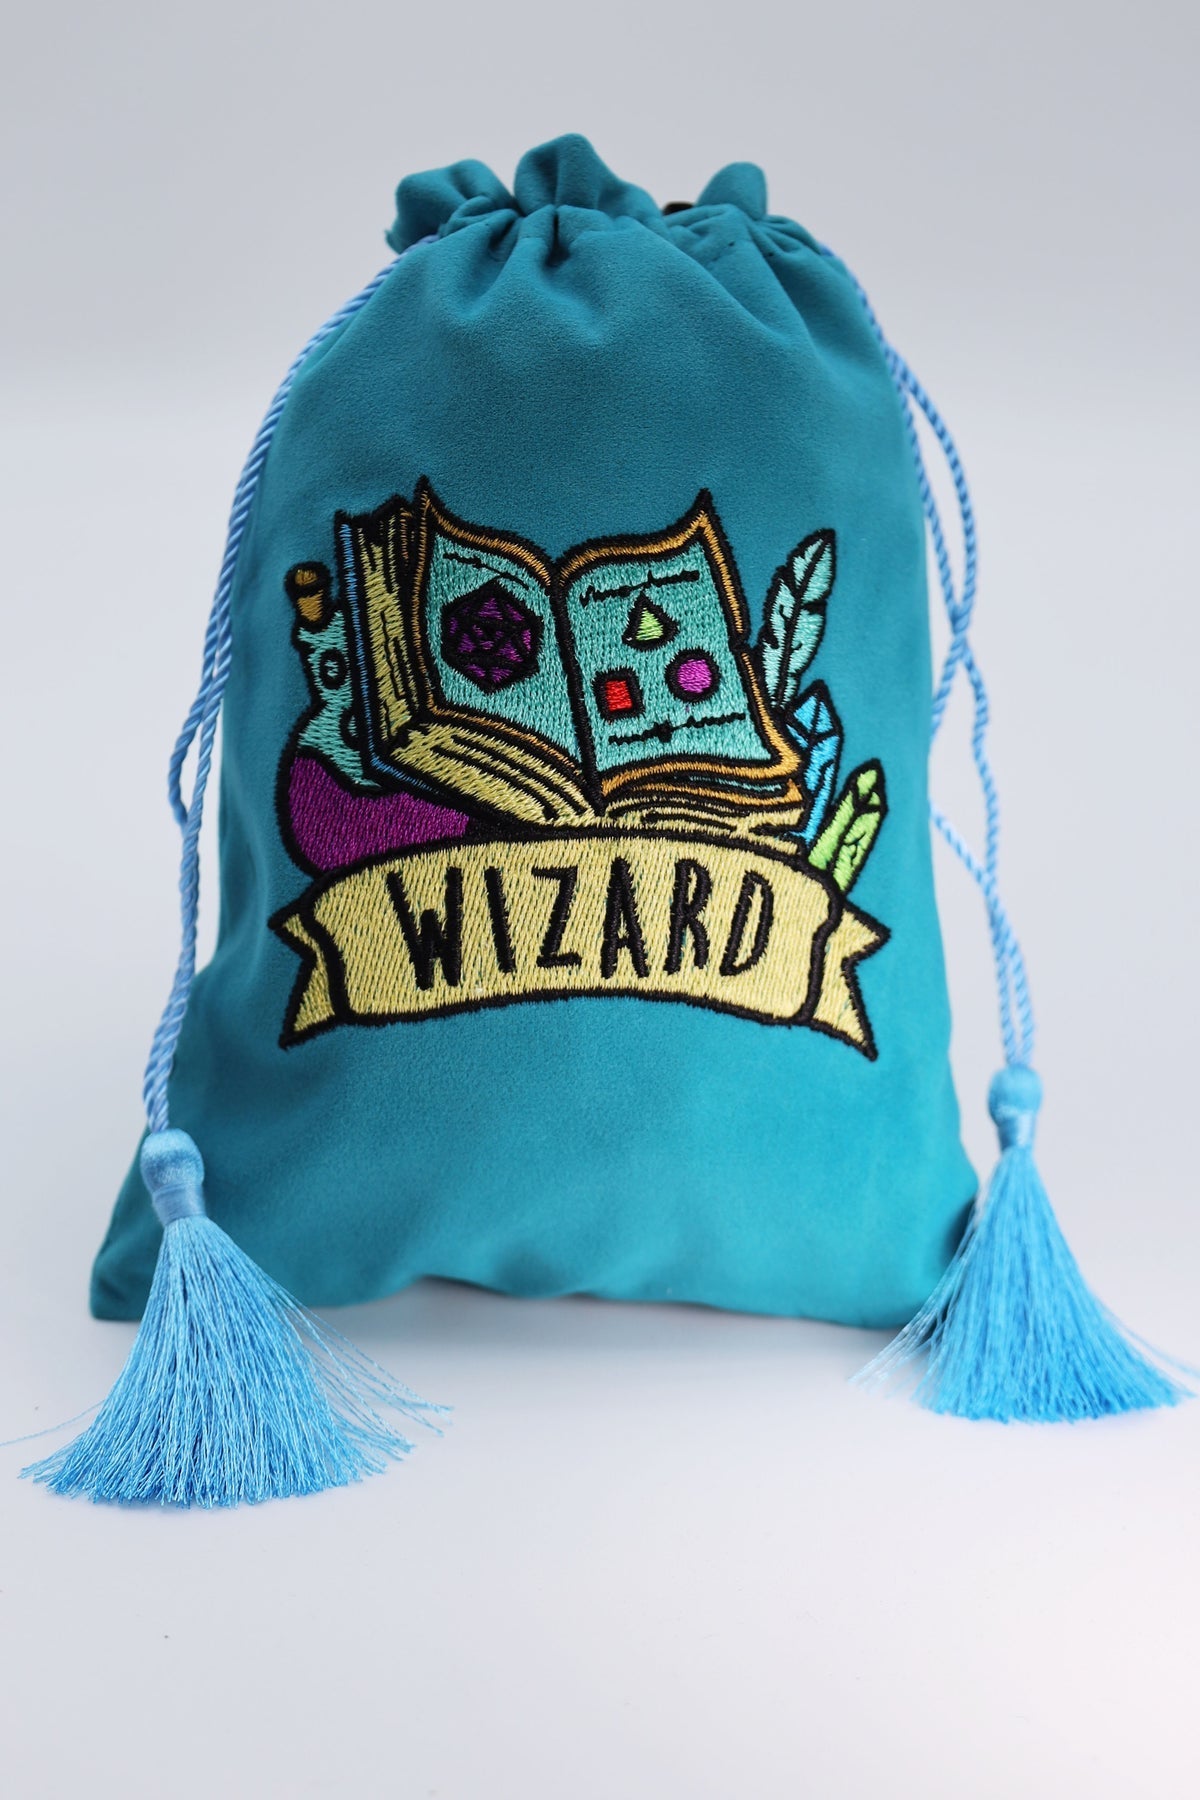 Dice Bag - Wizard | Grognard Games